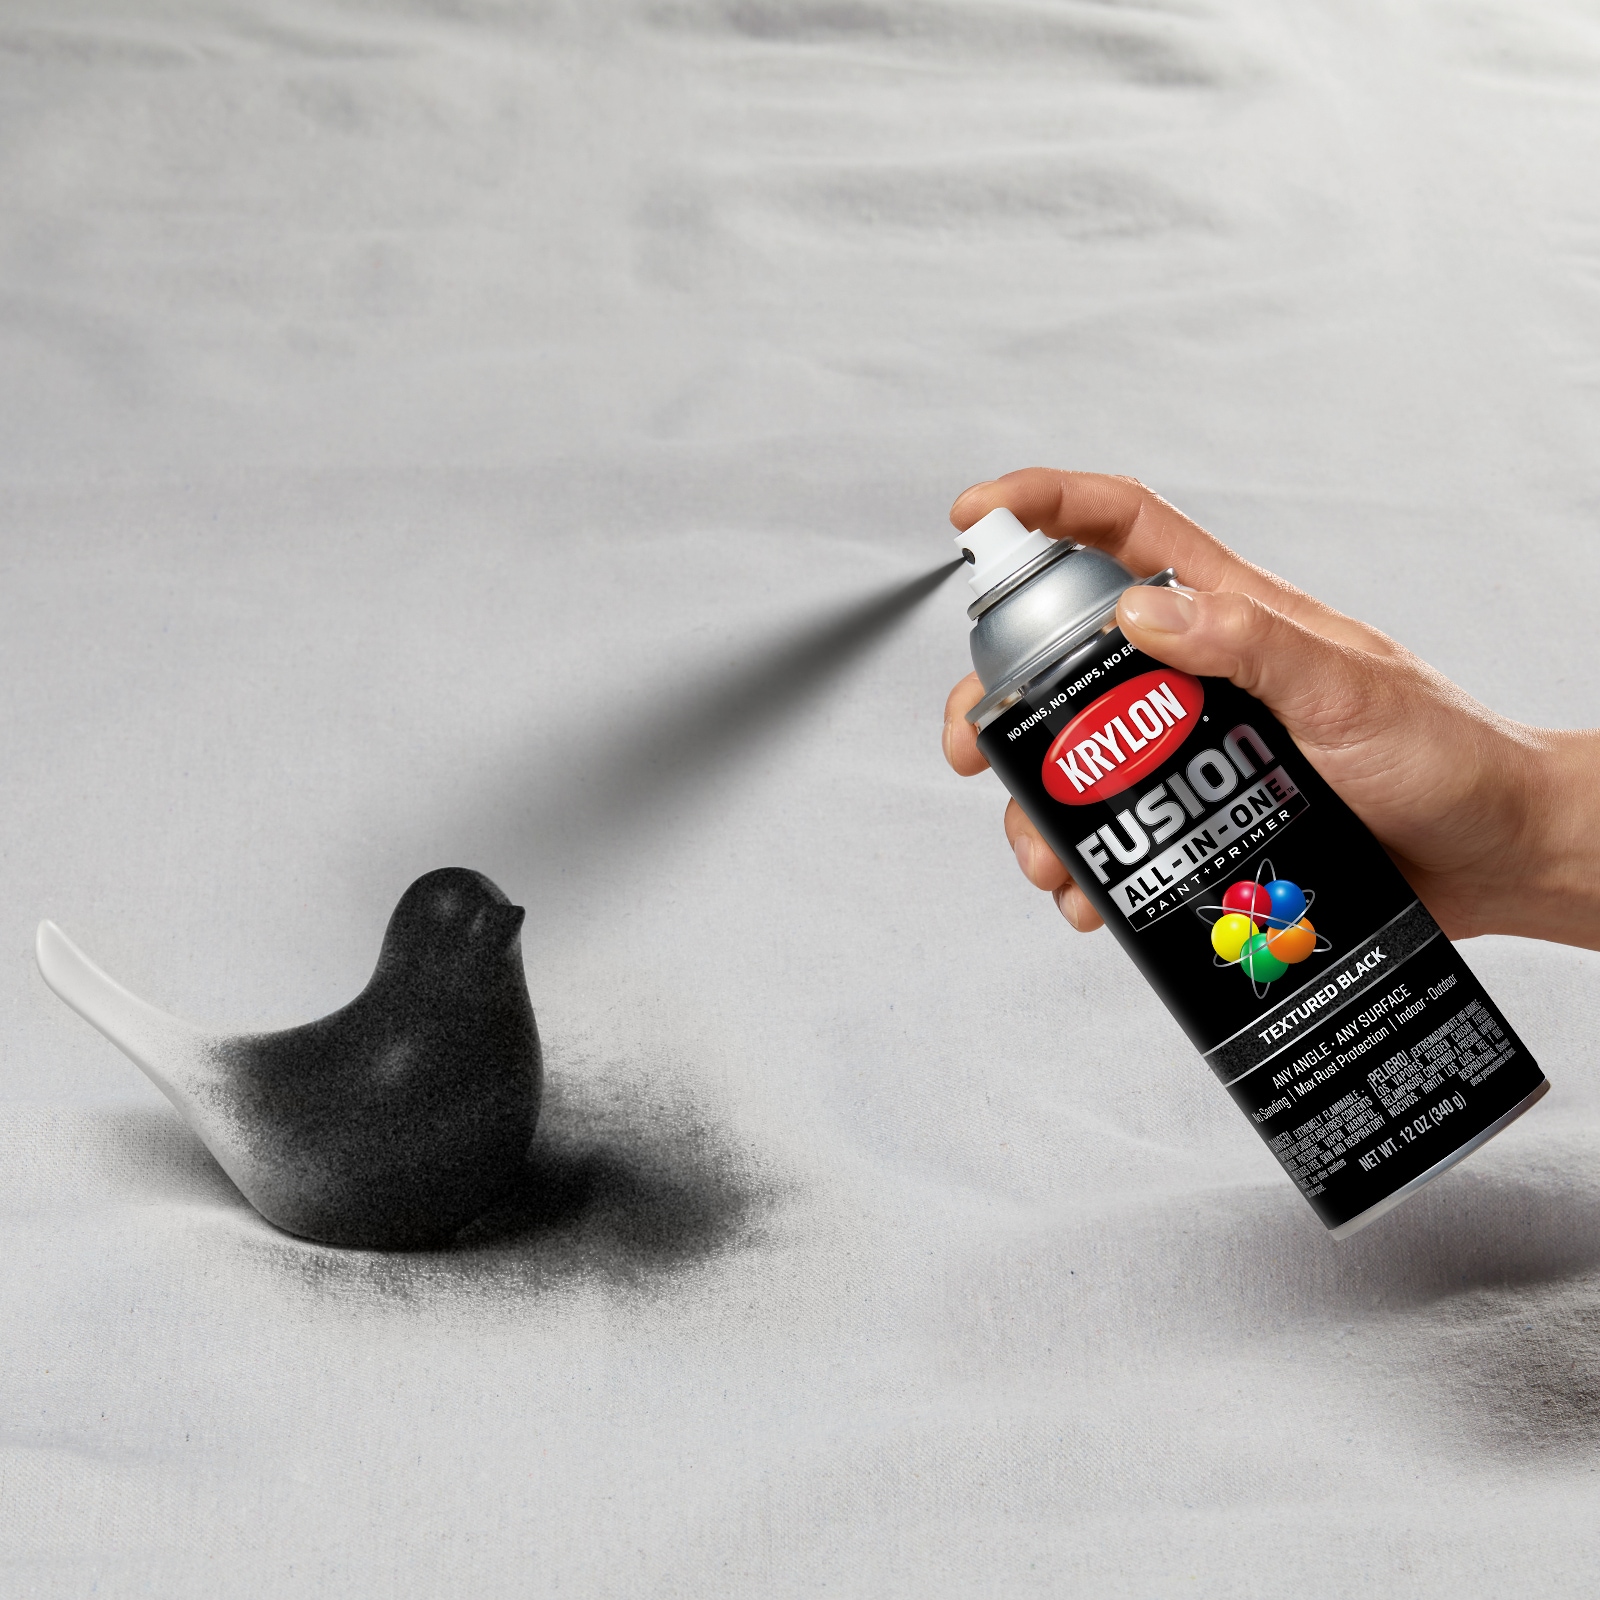 Krylon Acrylic Enamel Paint: 1,280 fl oz, Flat, Black - Indoor & Outdoor | Part #K11001201